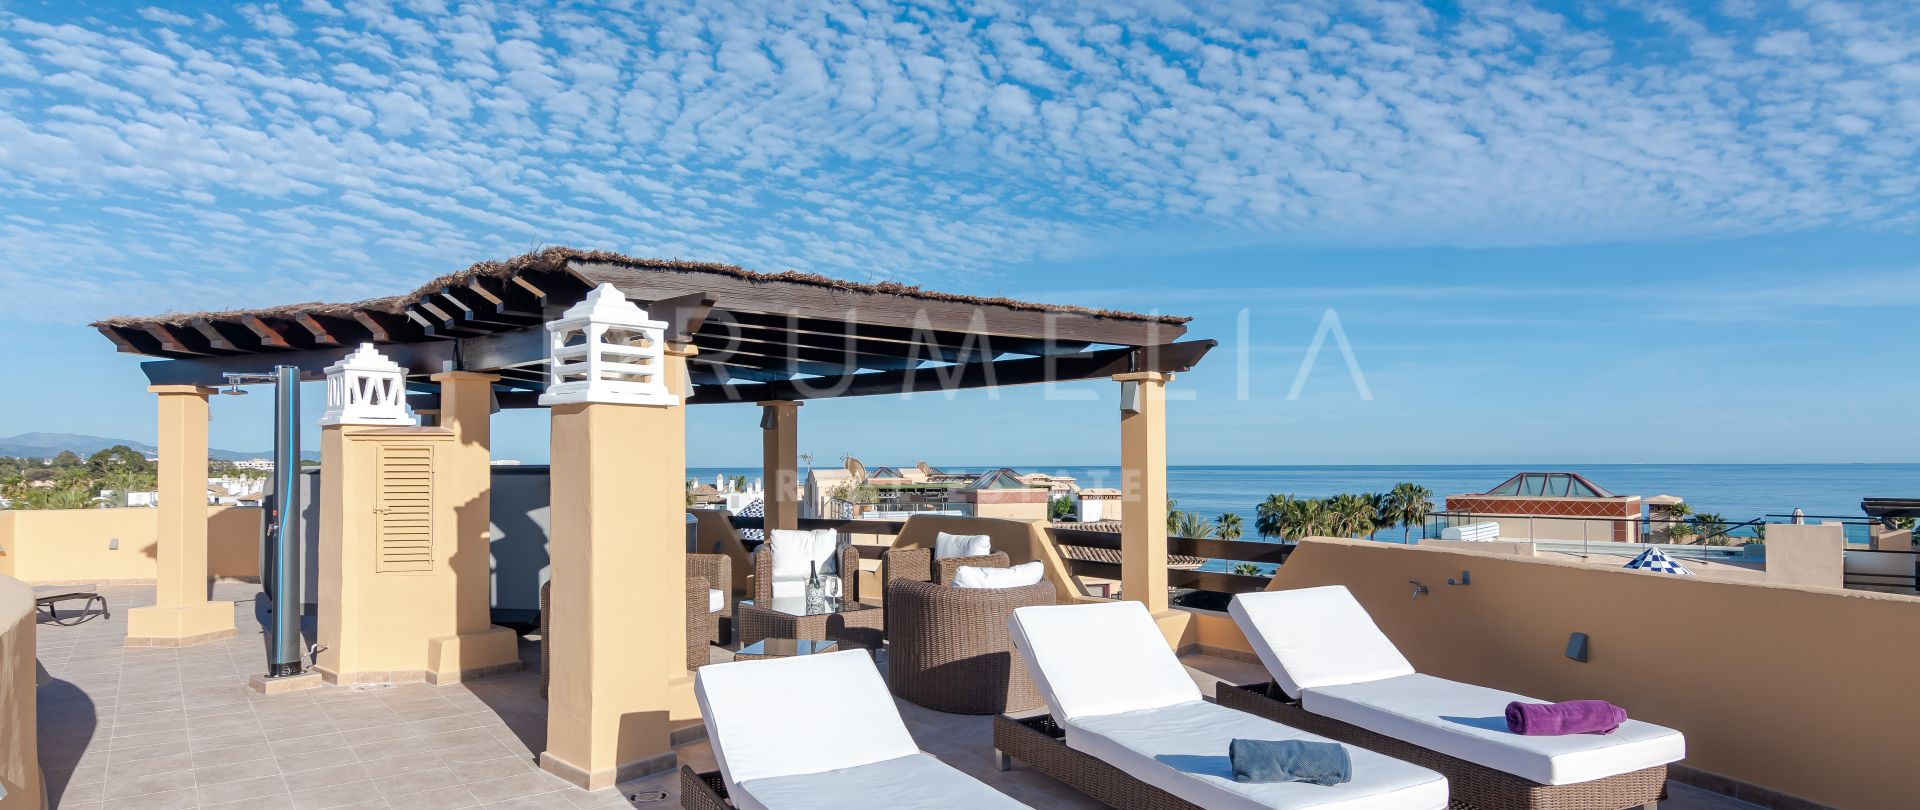 Modernes Luxus-Penthouse am Strand mit Meerblick und Einrichtung im Hampton-Stil in Costalita, Estepona